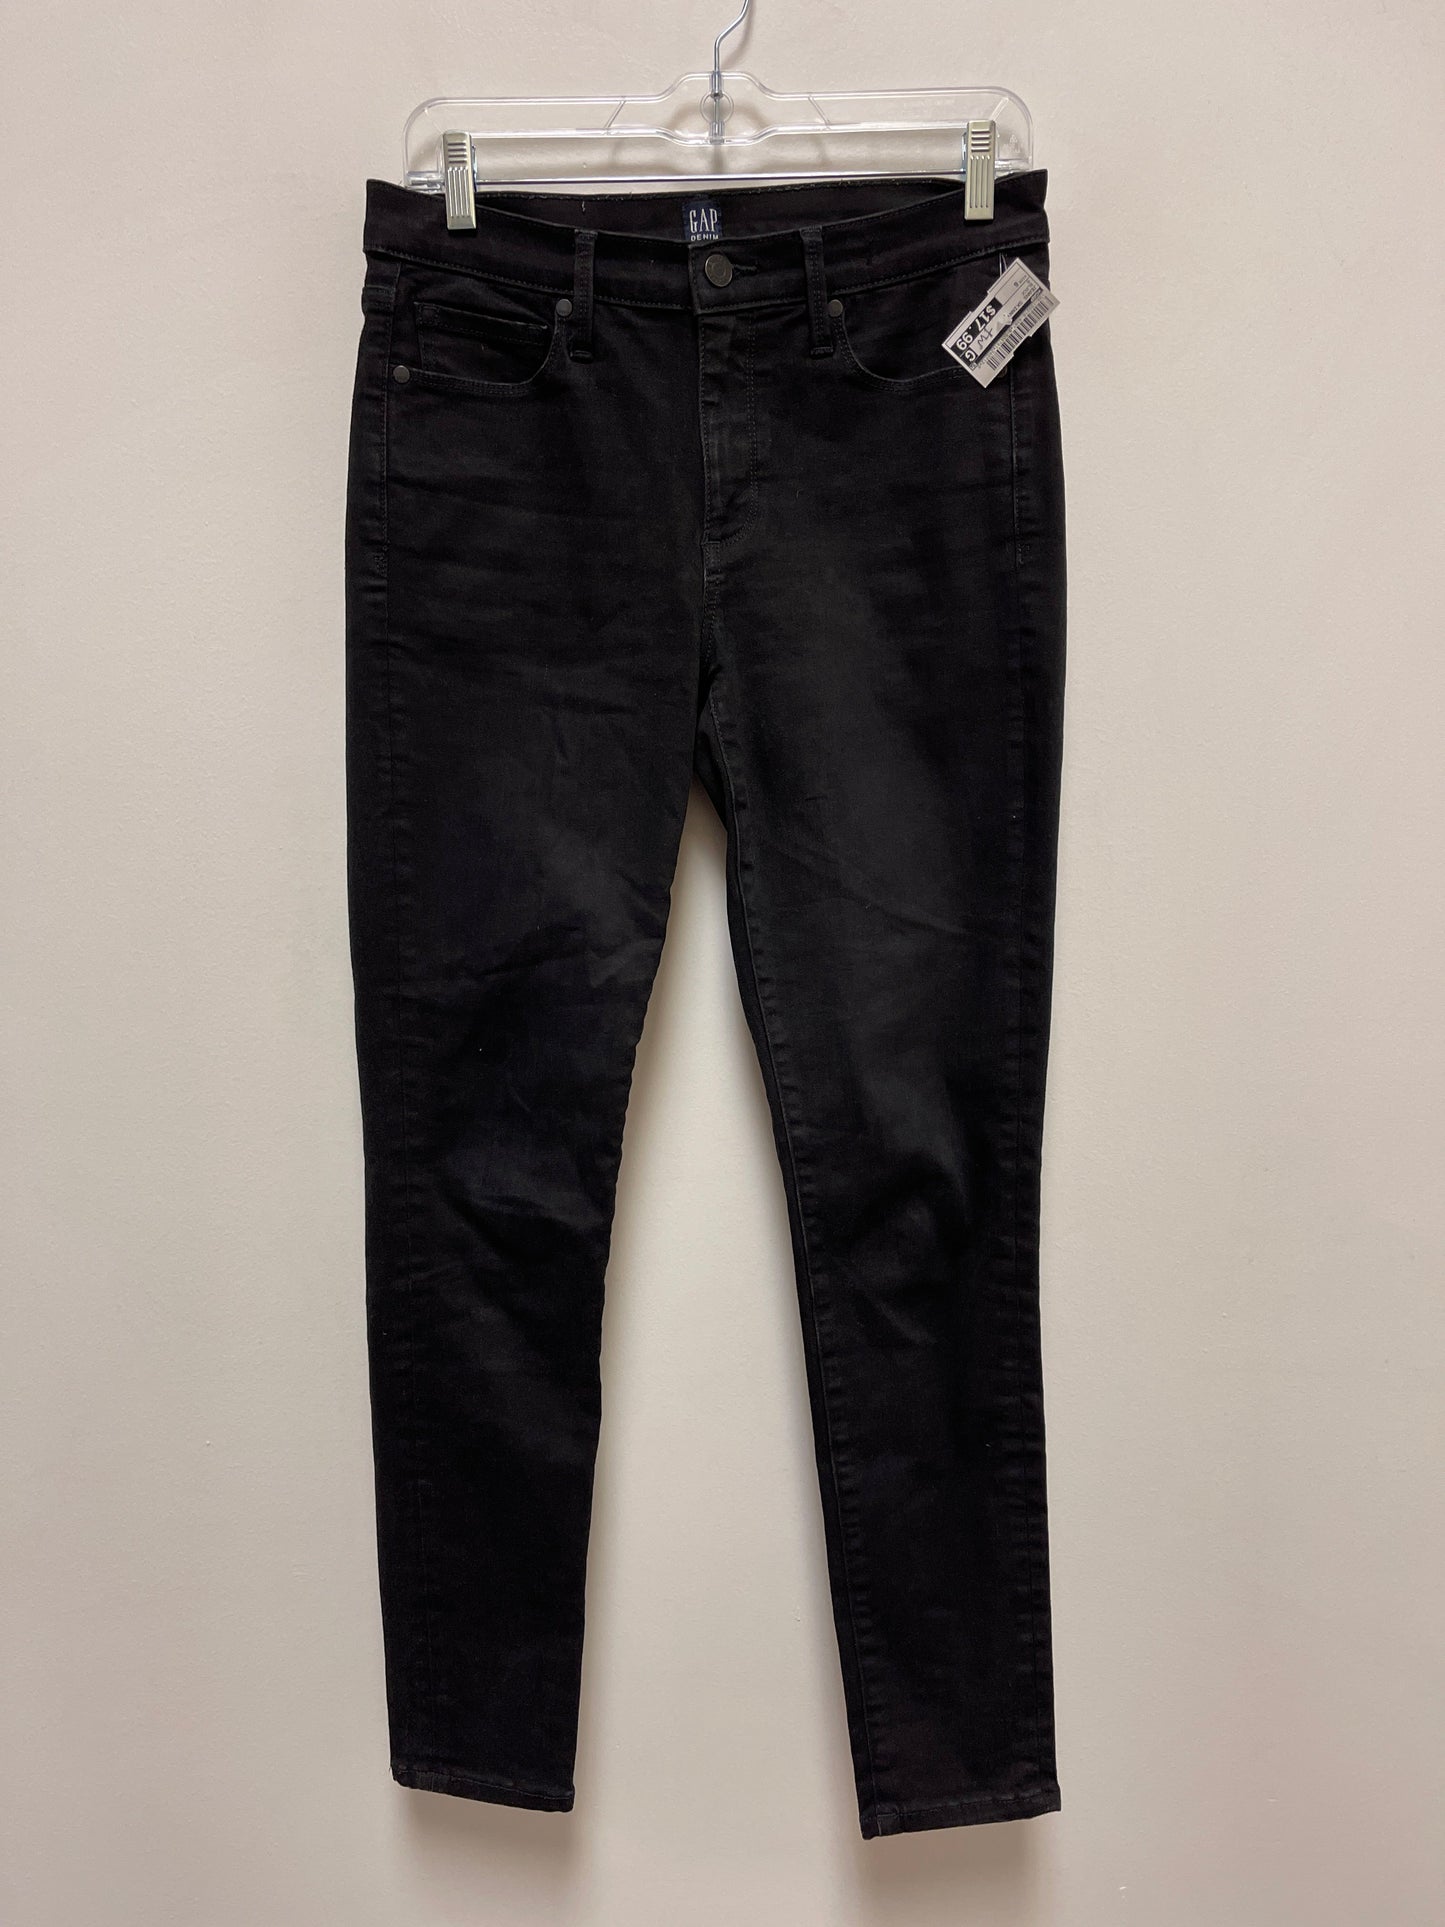 Black Jeans Skinny Gap, Size 6